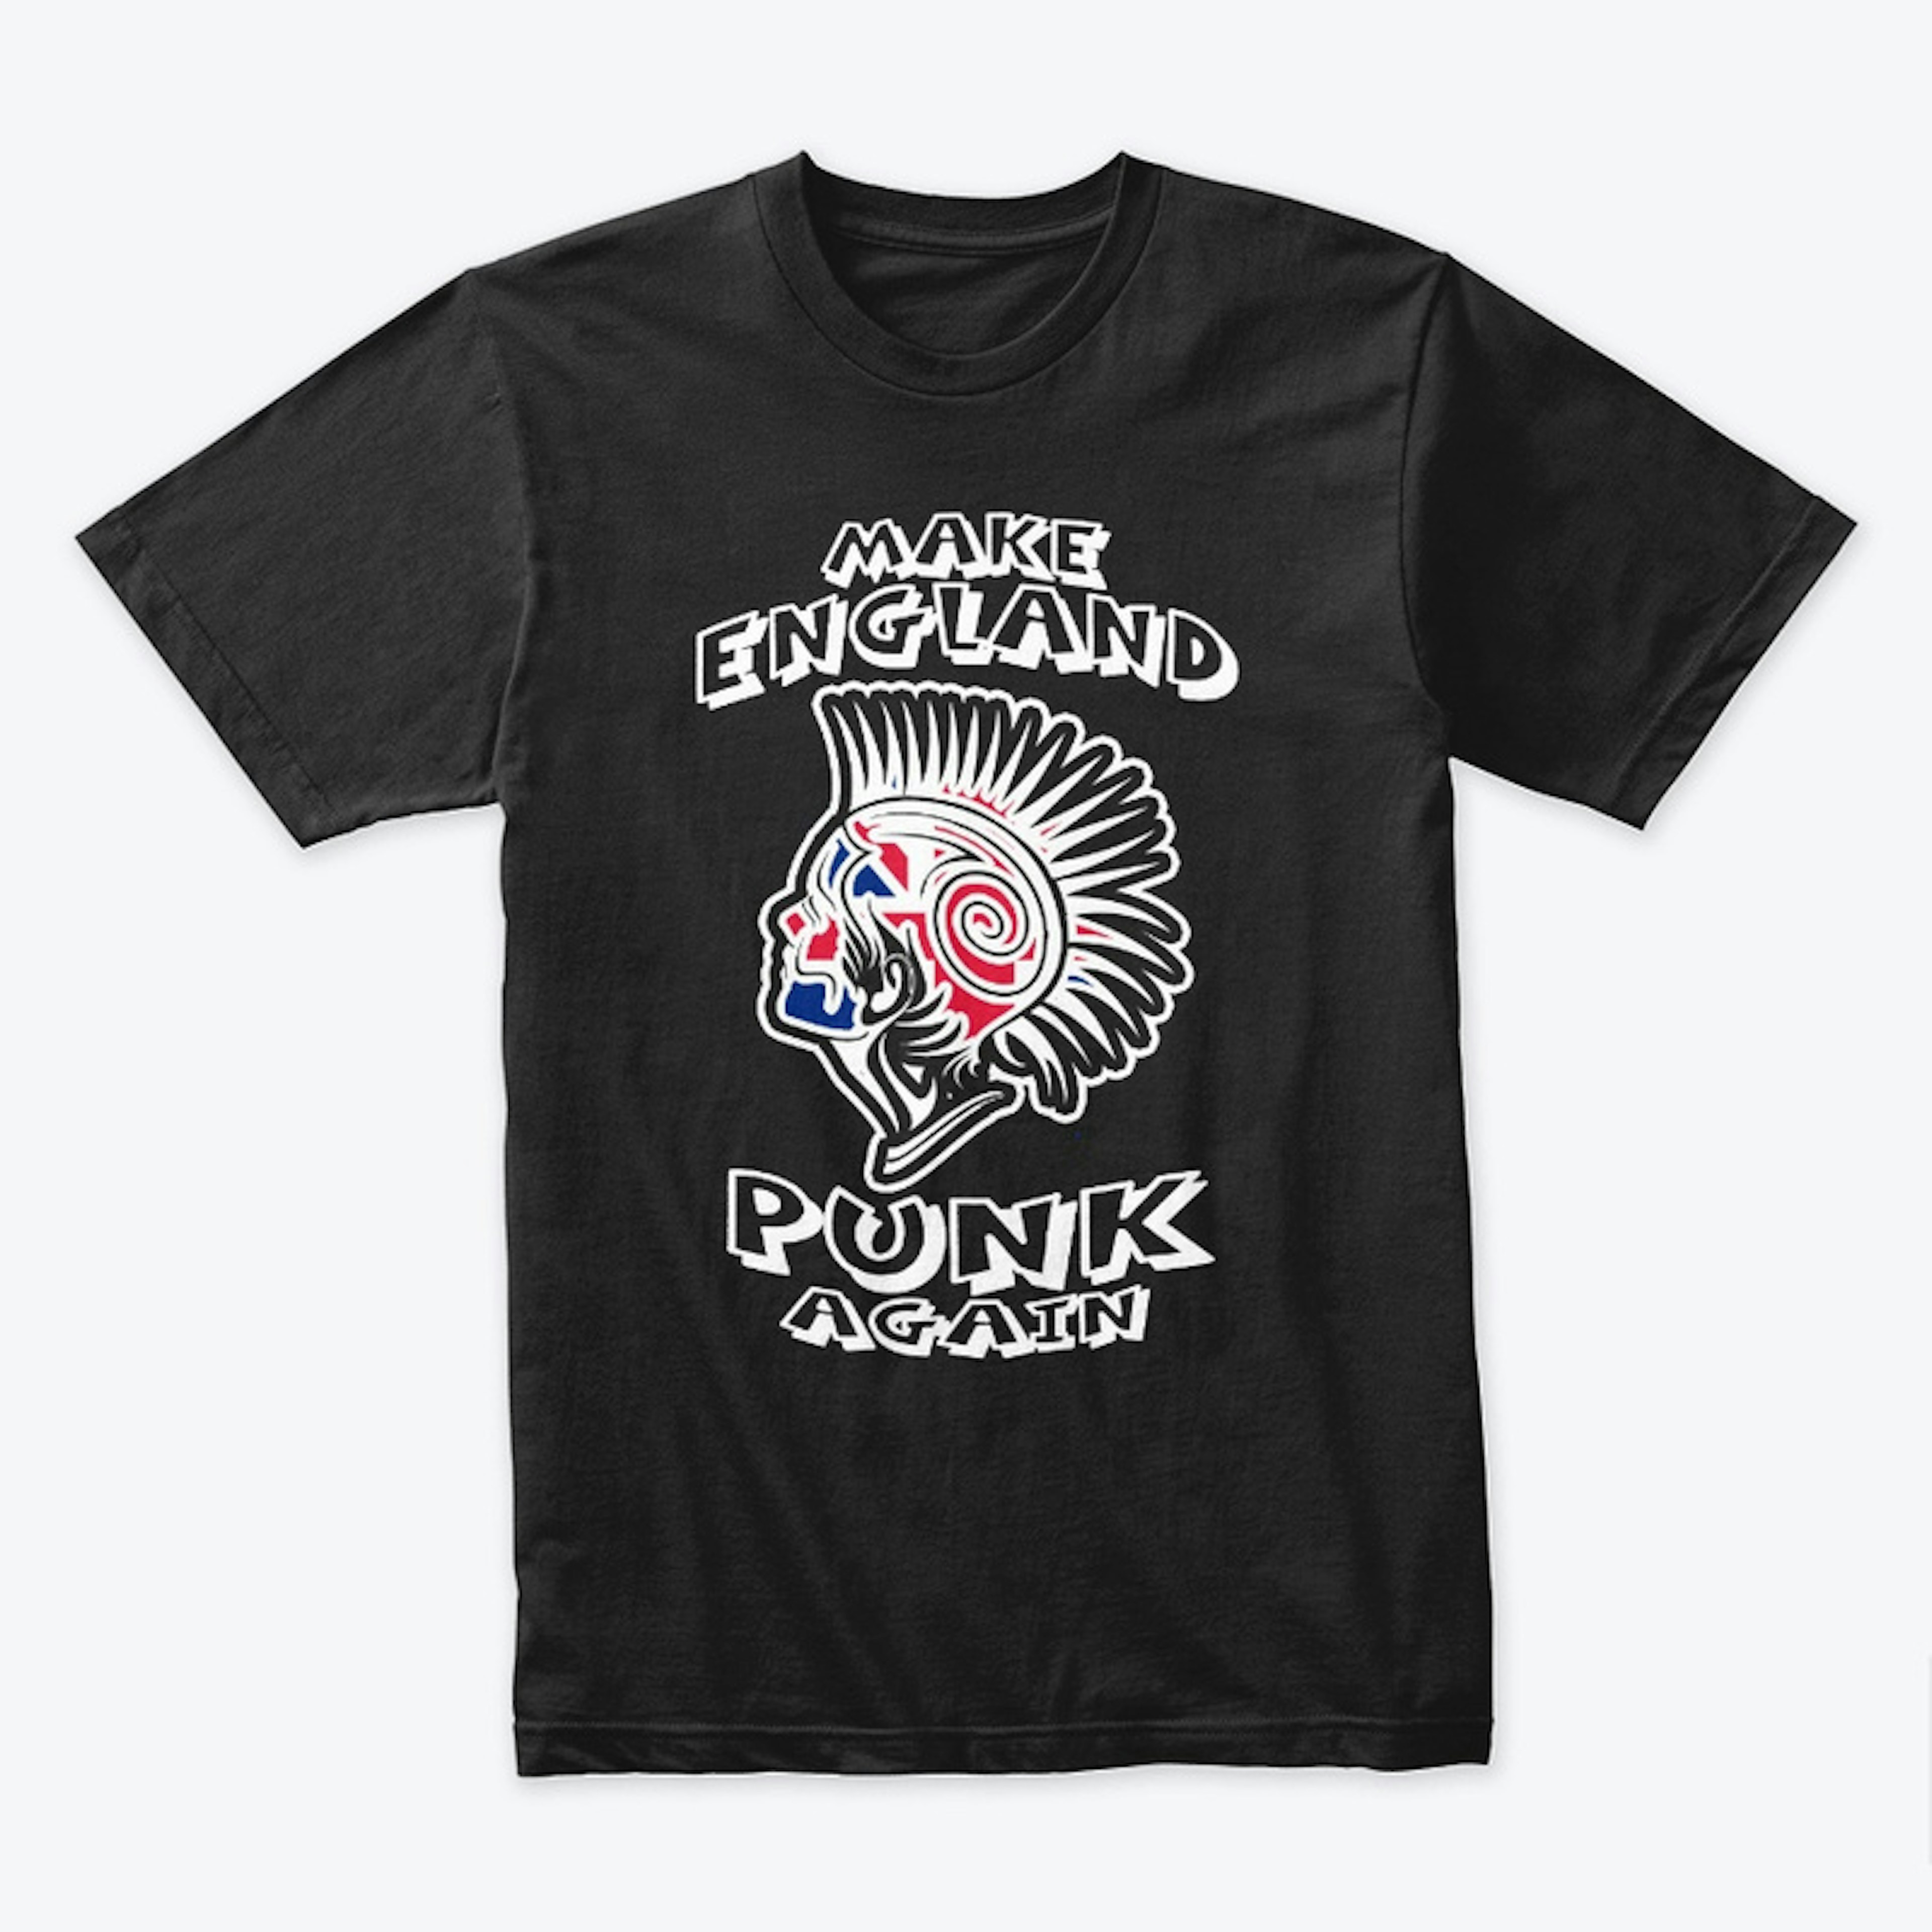 Make England Punk Again